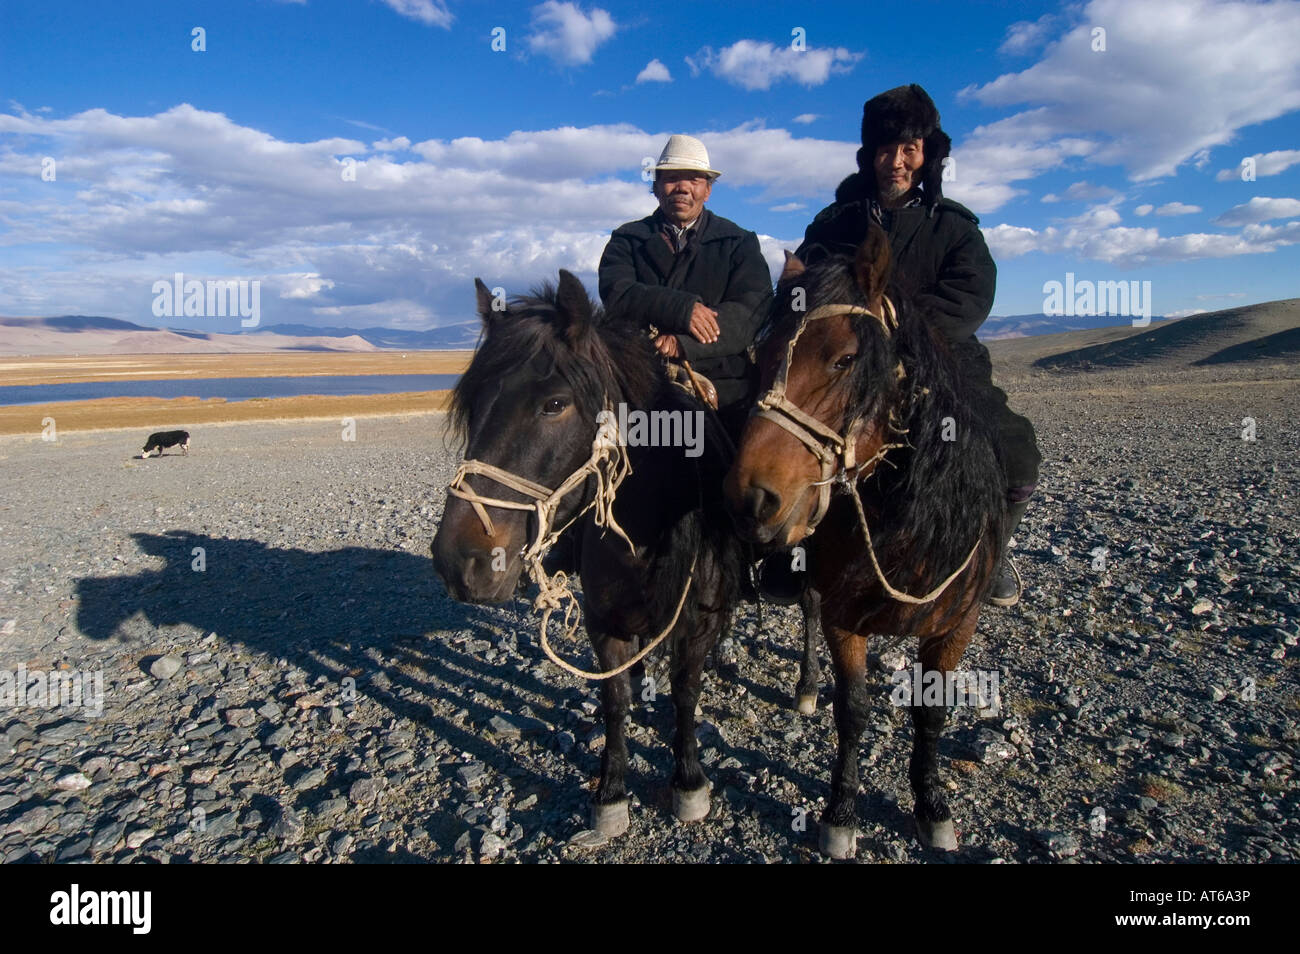 Two kazak nomads on horsebak in Sagsai, Bayan Olgi, Mongolia Stock Photo